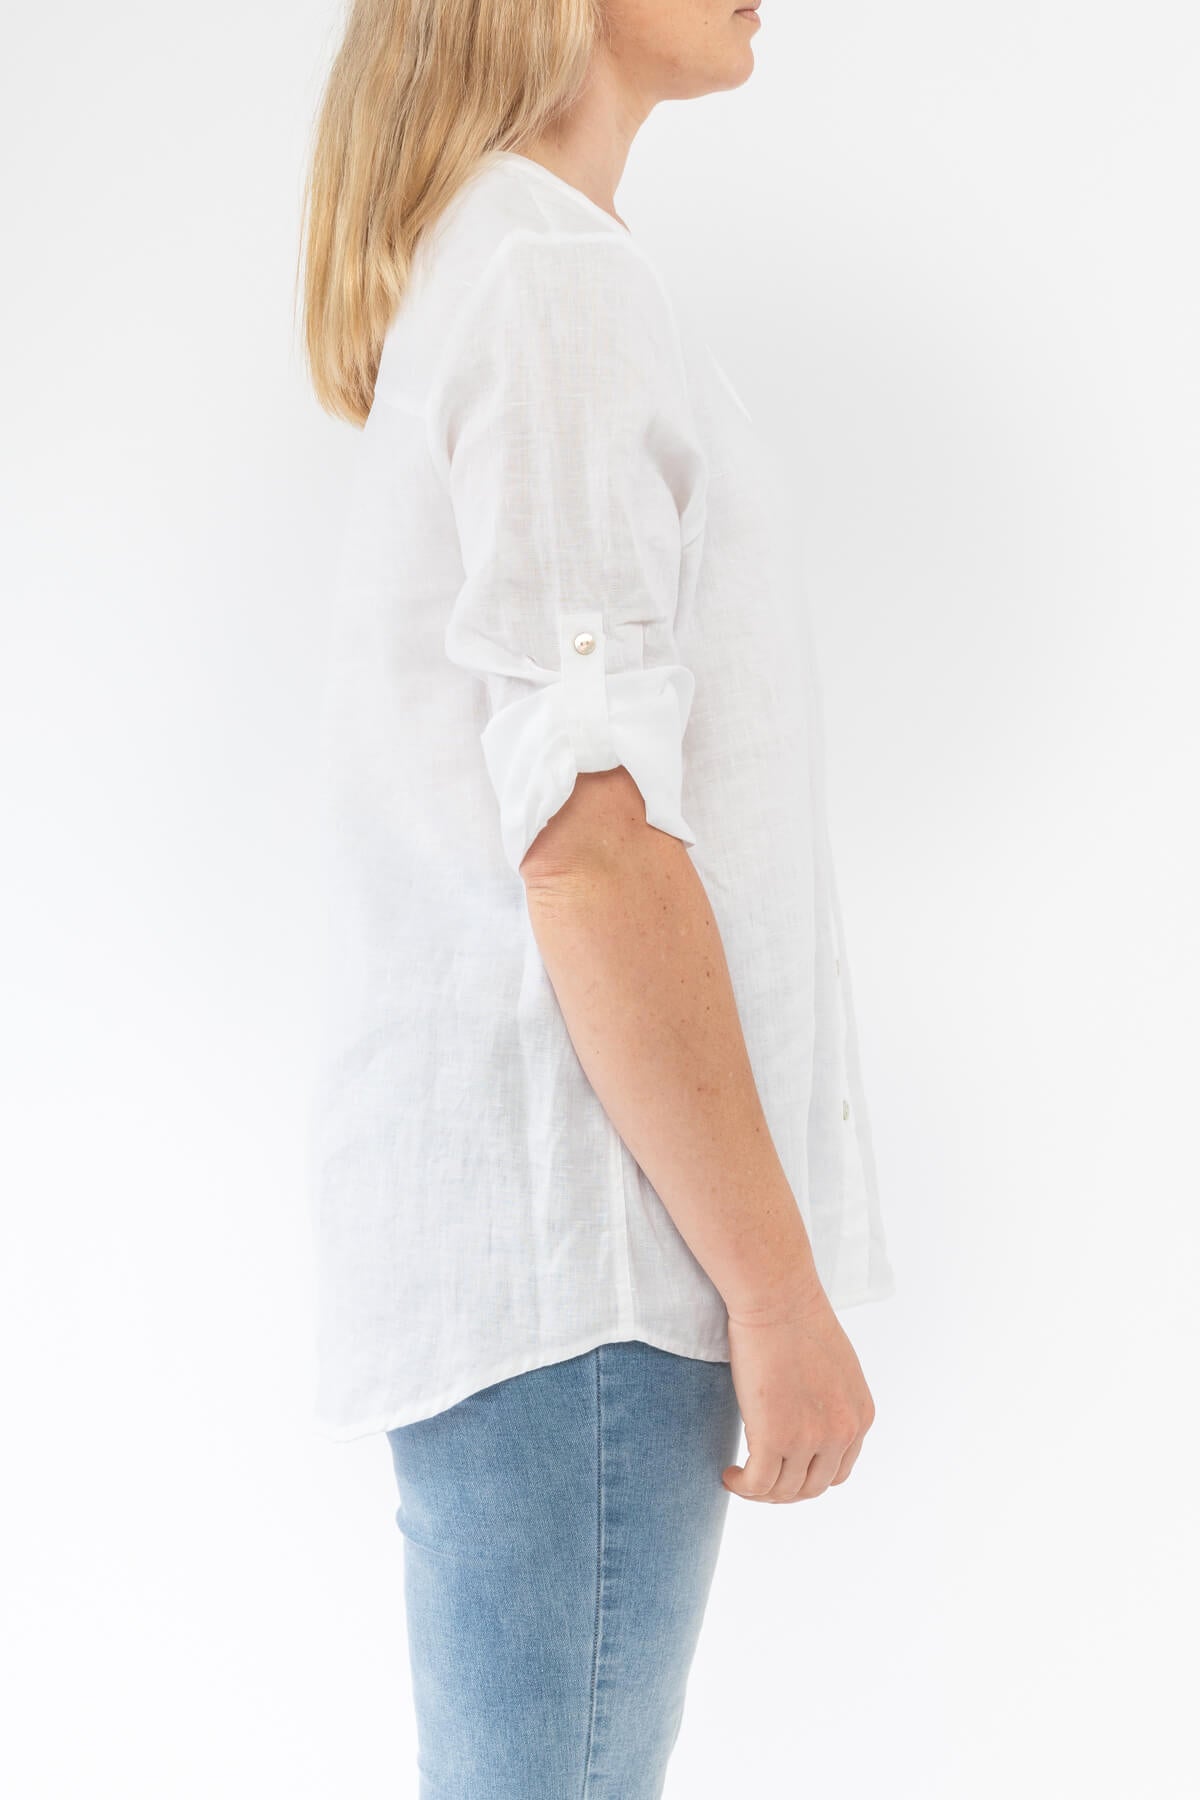 Sequin Pocket Shirt White